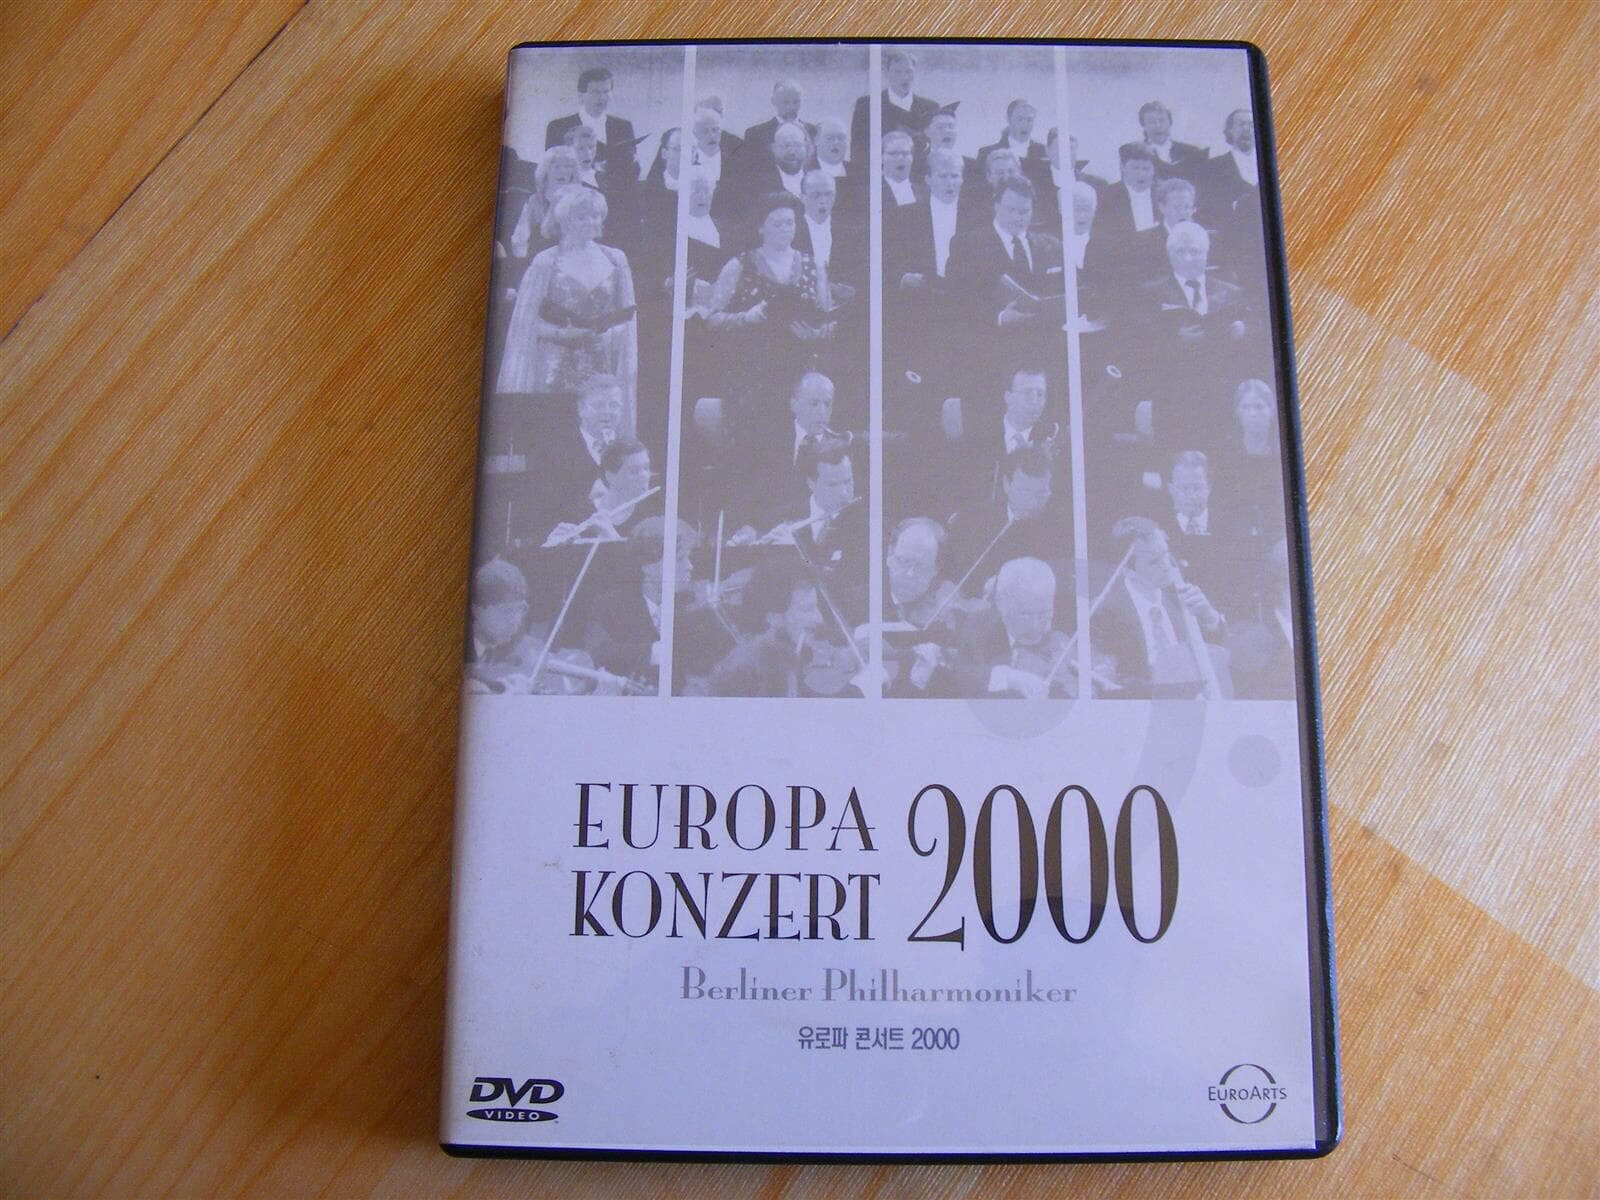 유로파 콘서트 2000(Europa Konzert 2000)